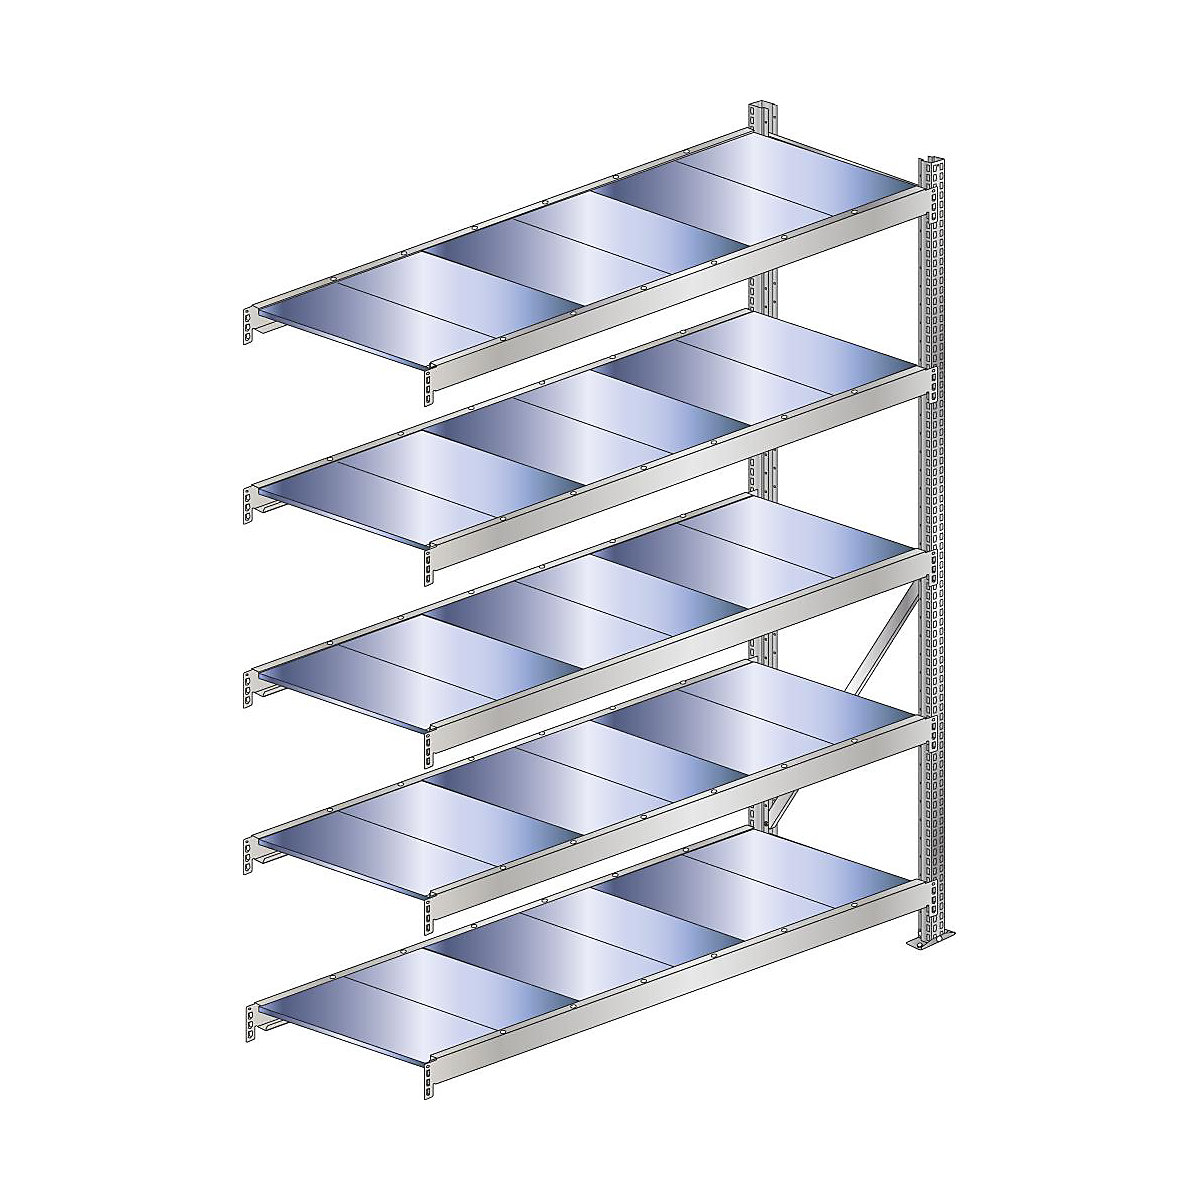 Wide span shelf unit, shelf load 500 kg – SCHULTE, shelf width 1500 mm, extension shelf unit, height 3000 mm, depth 500 mm